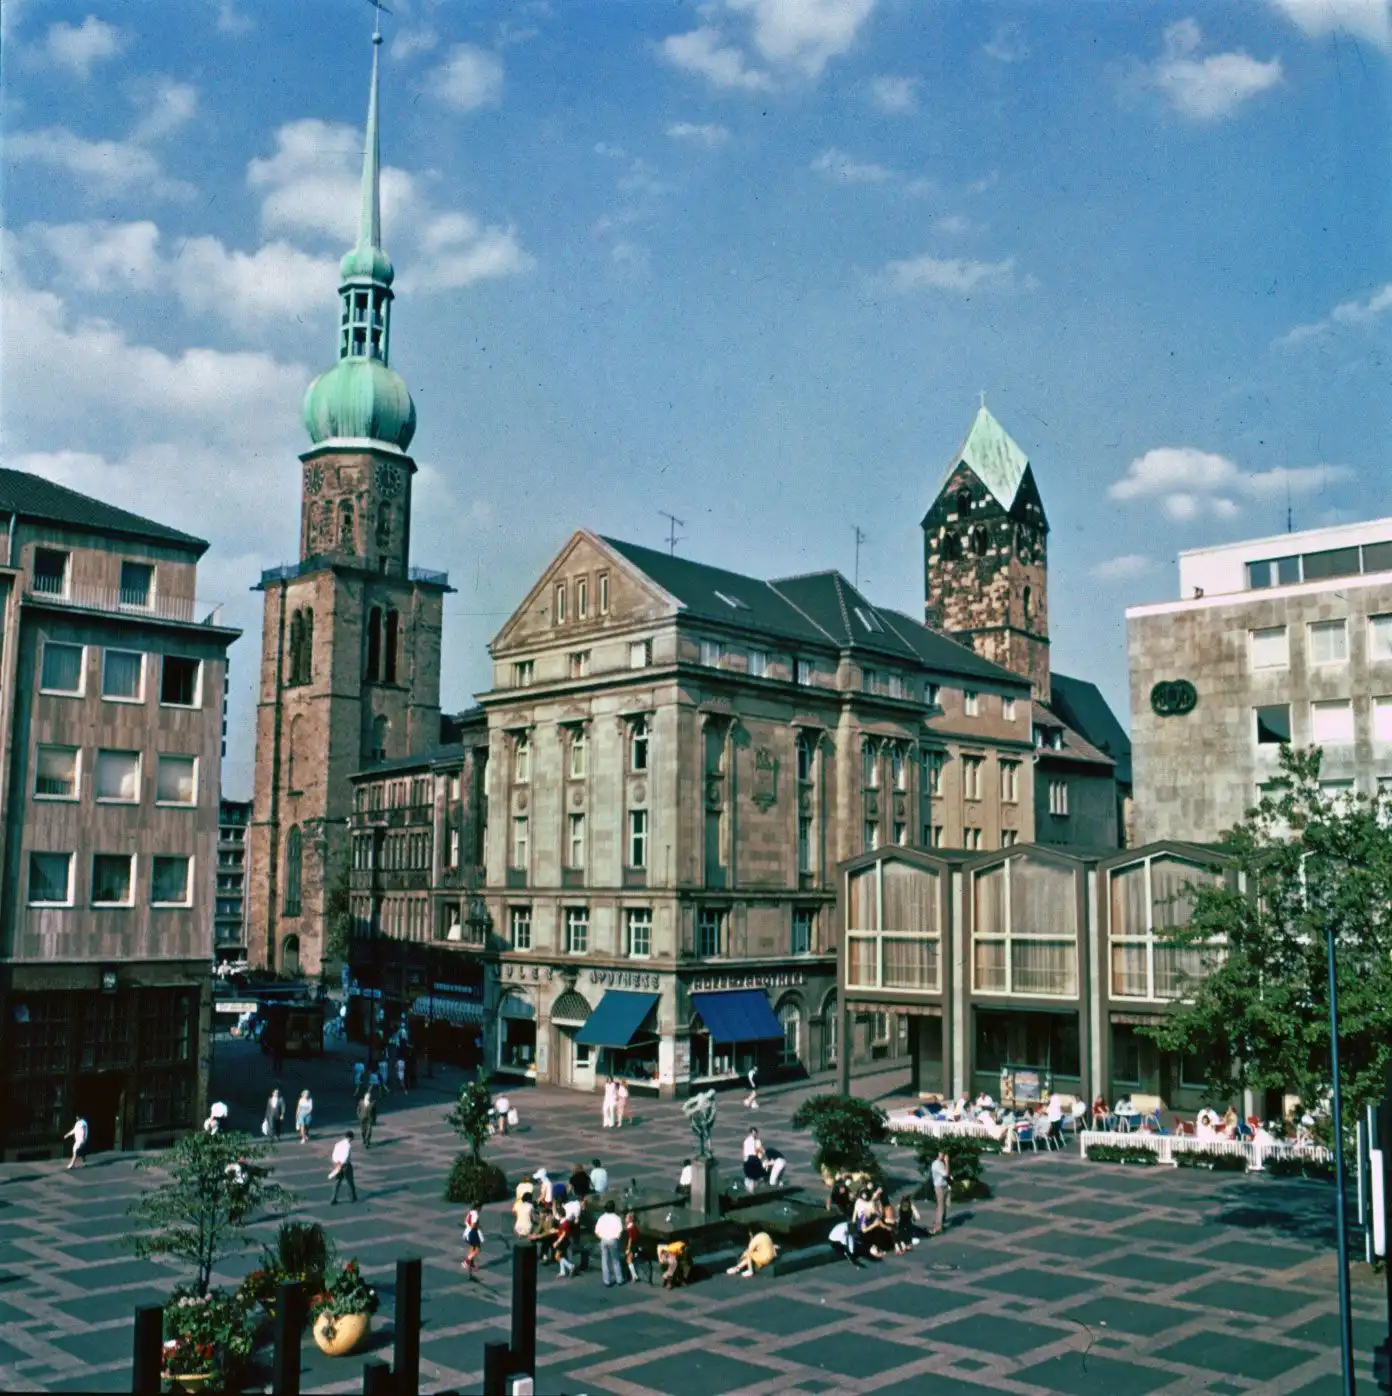 Dortmund tourism